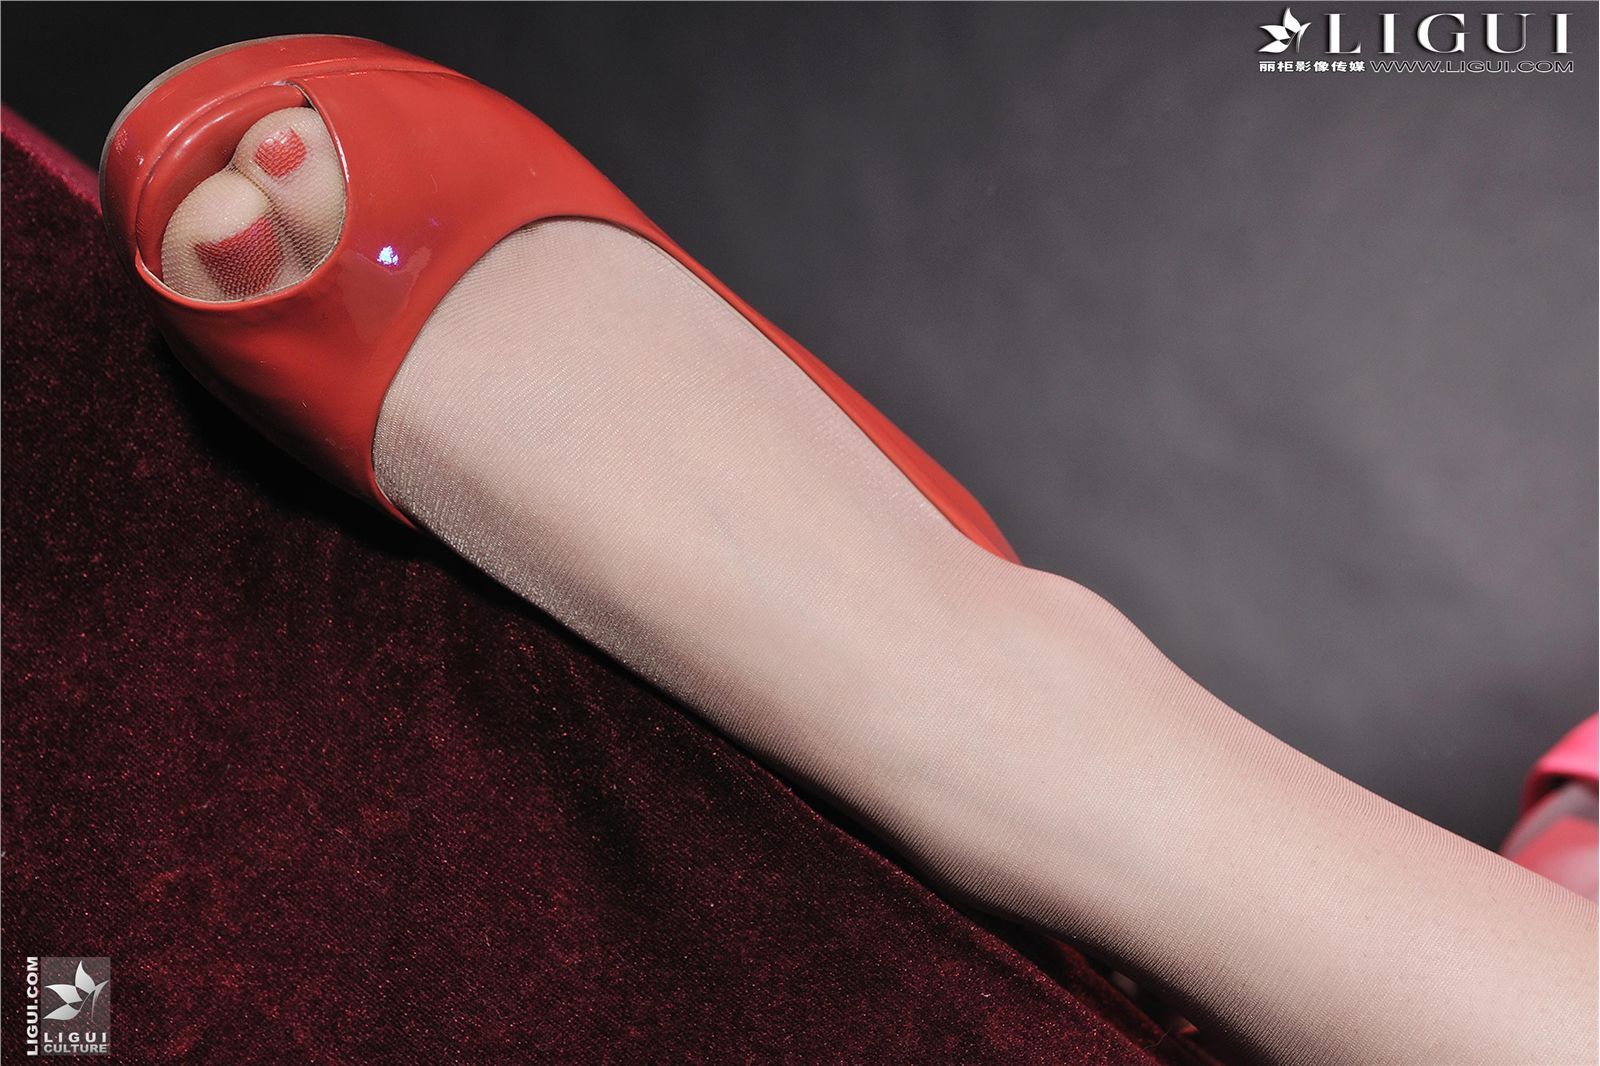 [Li cabinet] 20130219 online beauty model Chenchen domestic silk stockings beauty